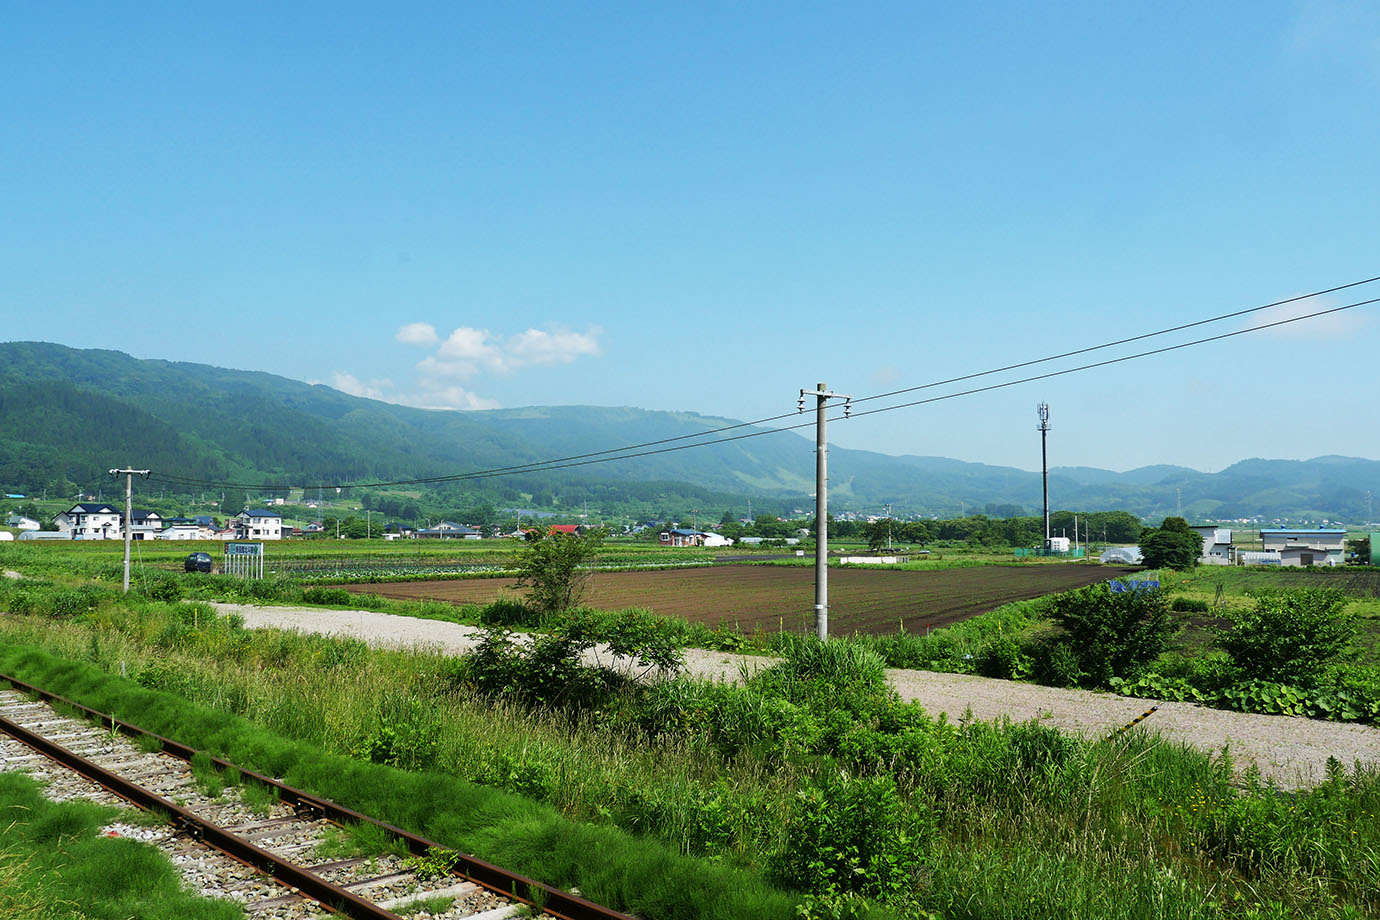 【衝撃】北海道新幹線の終点・新函館北斗駅の周辺に何もなさすぎる件 / マニア「何もないからいいんじゃあないか」